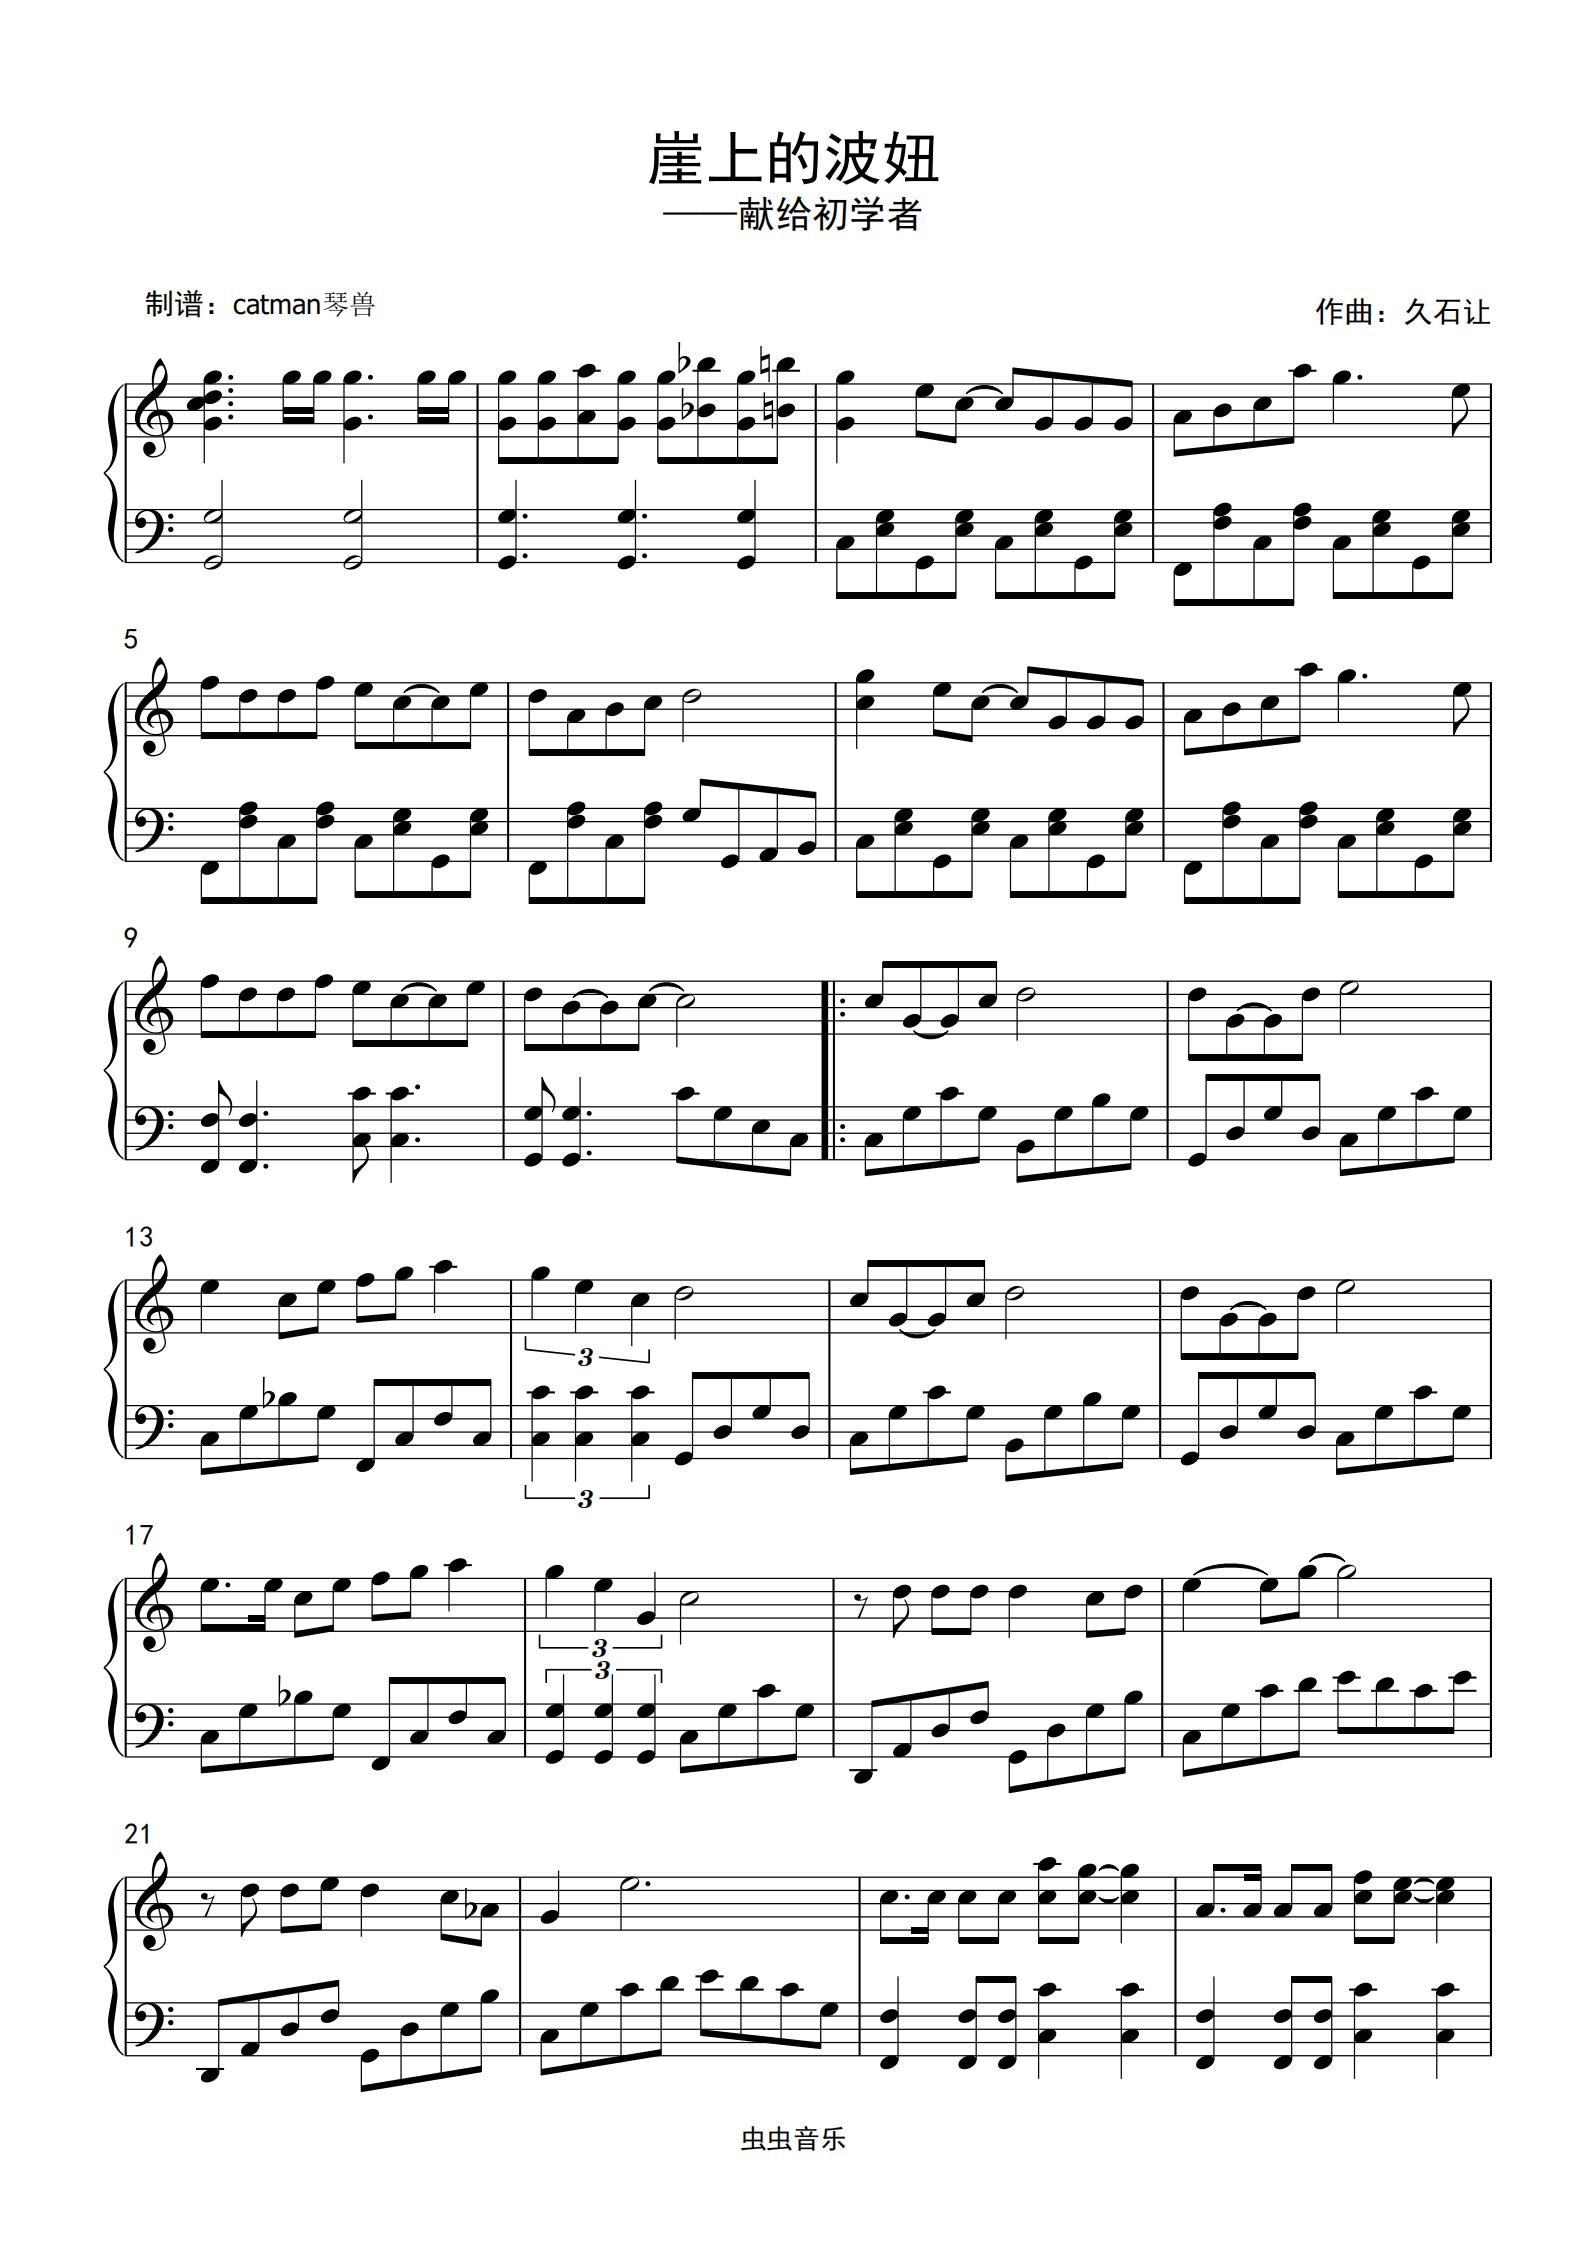 悬崖之上-简单版-悬崖之上主题曲五线谱预览3-钢琴谱文件（五线谱、双手简谱、数字谱、Midi、PDF）免费下载